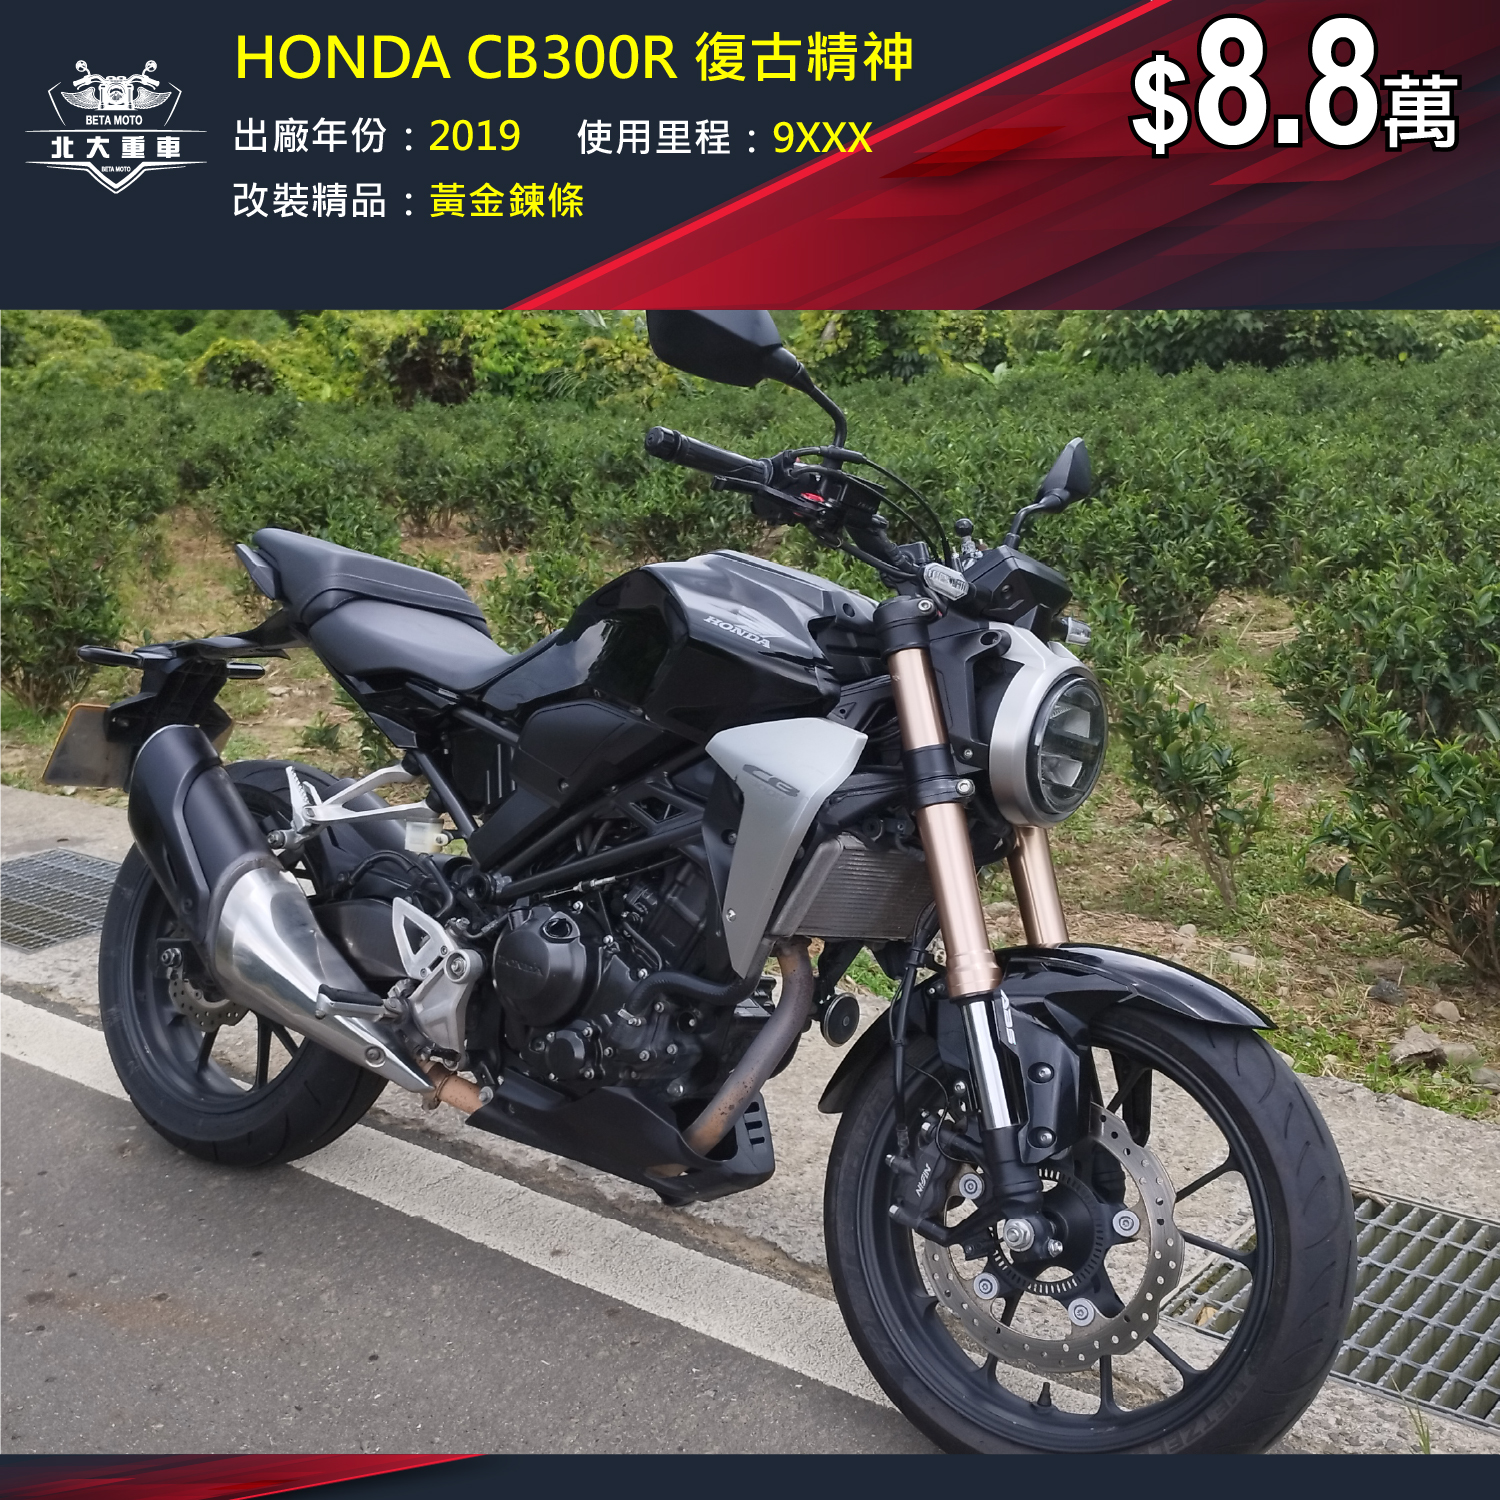 【北大重車】HONDA CB300R - 「Webike-摩托車市」 HONDA CB300R 復古精神